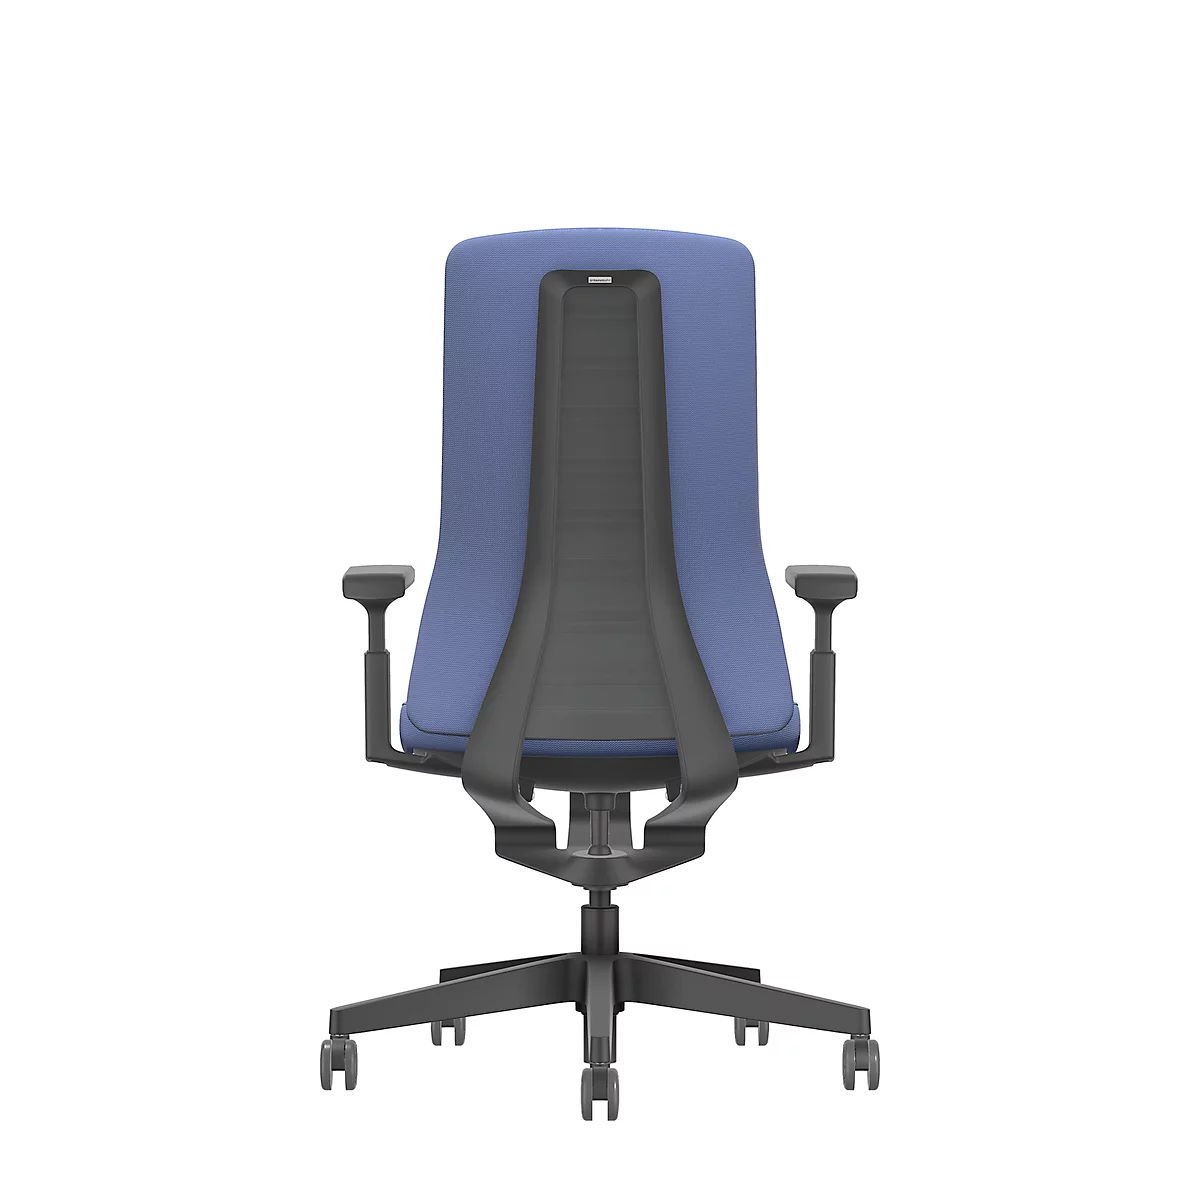 Interstuhl Bürostuhl PUREis3, verstellbare Armlehnen, 3D-Auto-Synchronmechanik, Muldensitz, Polster-Netzrücken, kobaltblau/schwarz